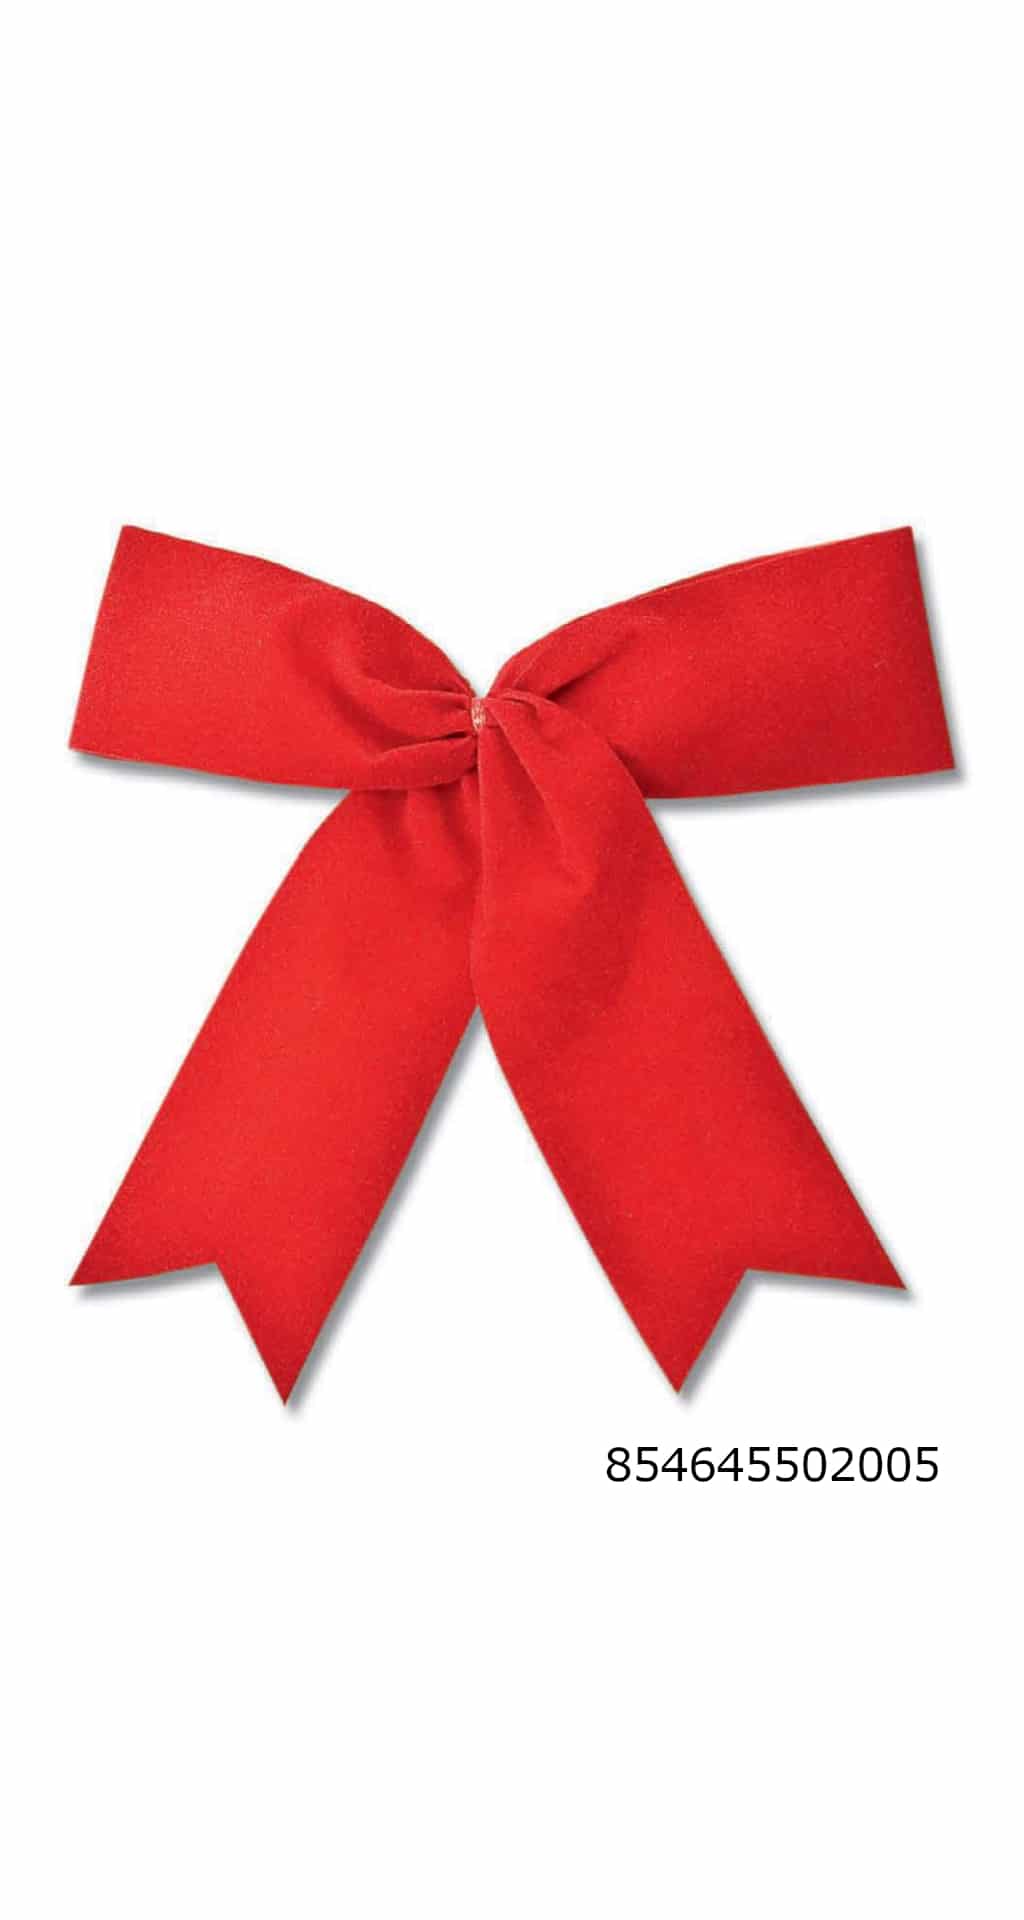 Samtschleife rot, Durchmesser ca. 19cm, Outdoor geeignet - weihnachtsband-2, geschenkverpackung, weihnachtsbaender, outdoor-bander, fertigschleifen